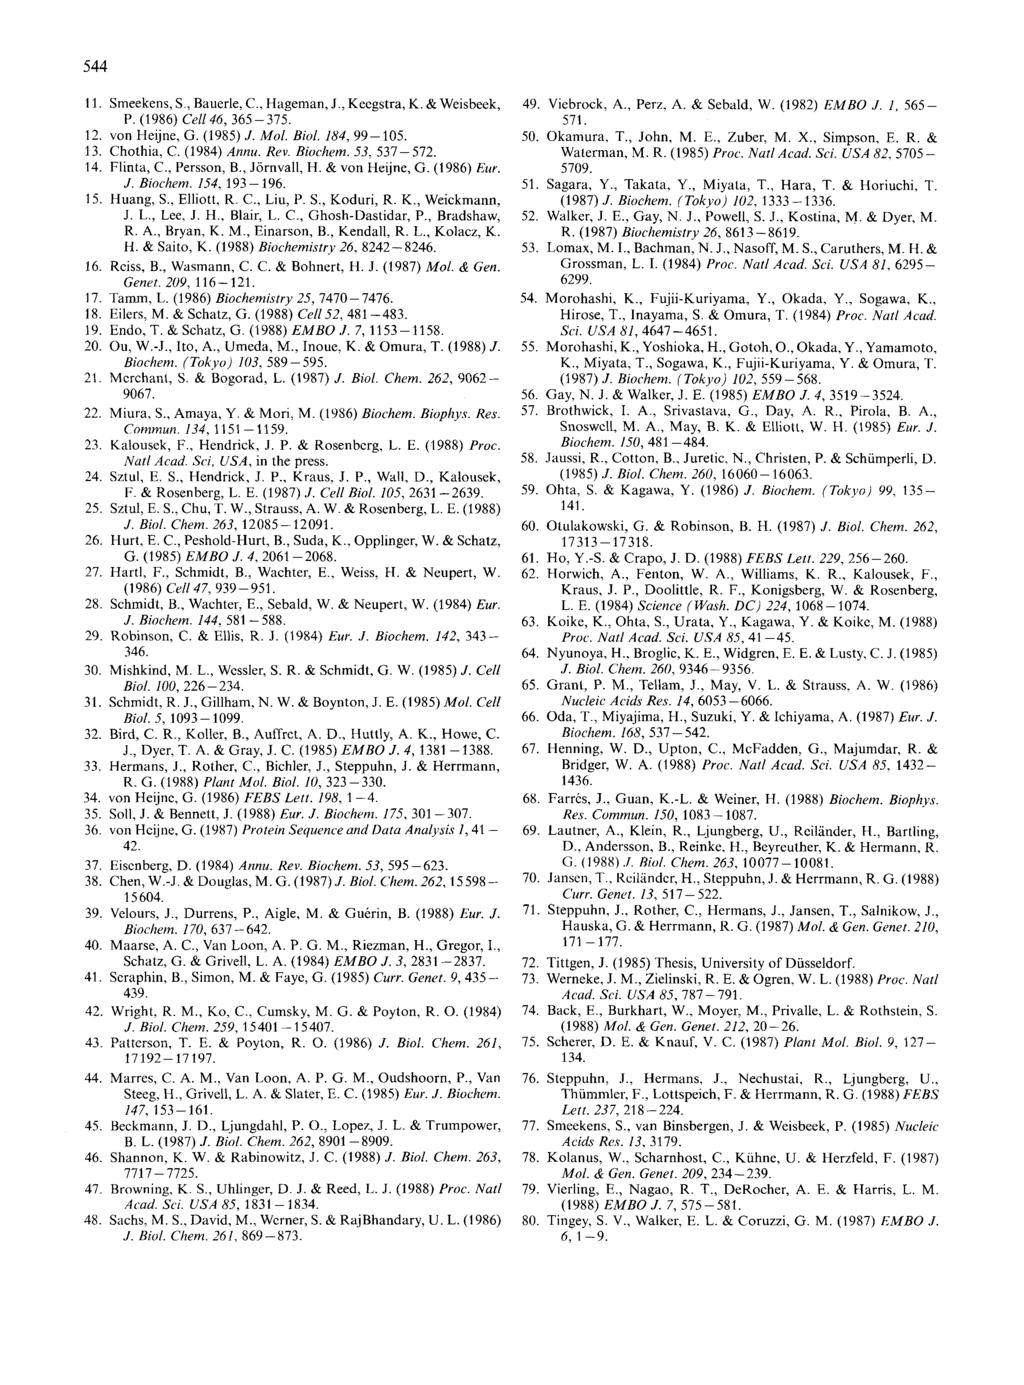 11. Smeekens, S., Bauerle, C., Hageman, J., Kecgstra, K. & Weisbeek, P. (1986) Cell46, 365-375. 12. 13. 14. 15. 16. 17. 18. 19. 20. 33. 34. 35. 36. von Heijne, G. (1985) J. Mol. Biol. 184, 99-105.